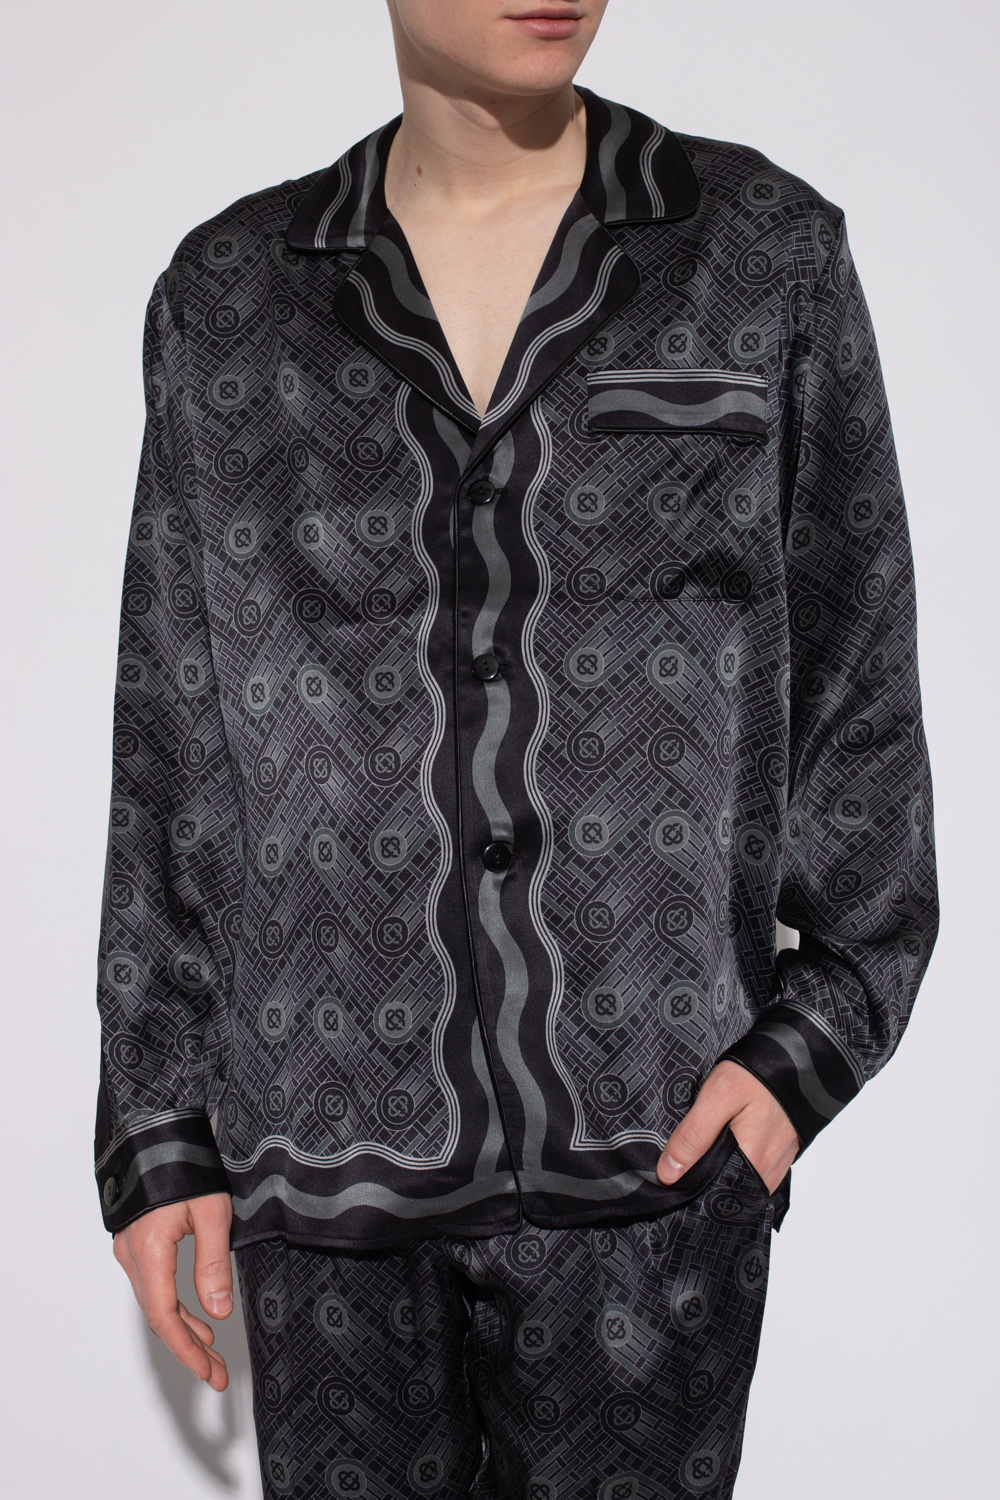 Casablanca Silk shirt | Men's Clothing | Vitkac